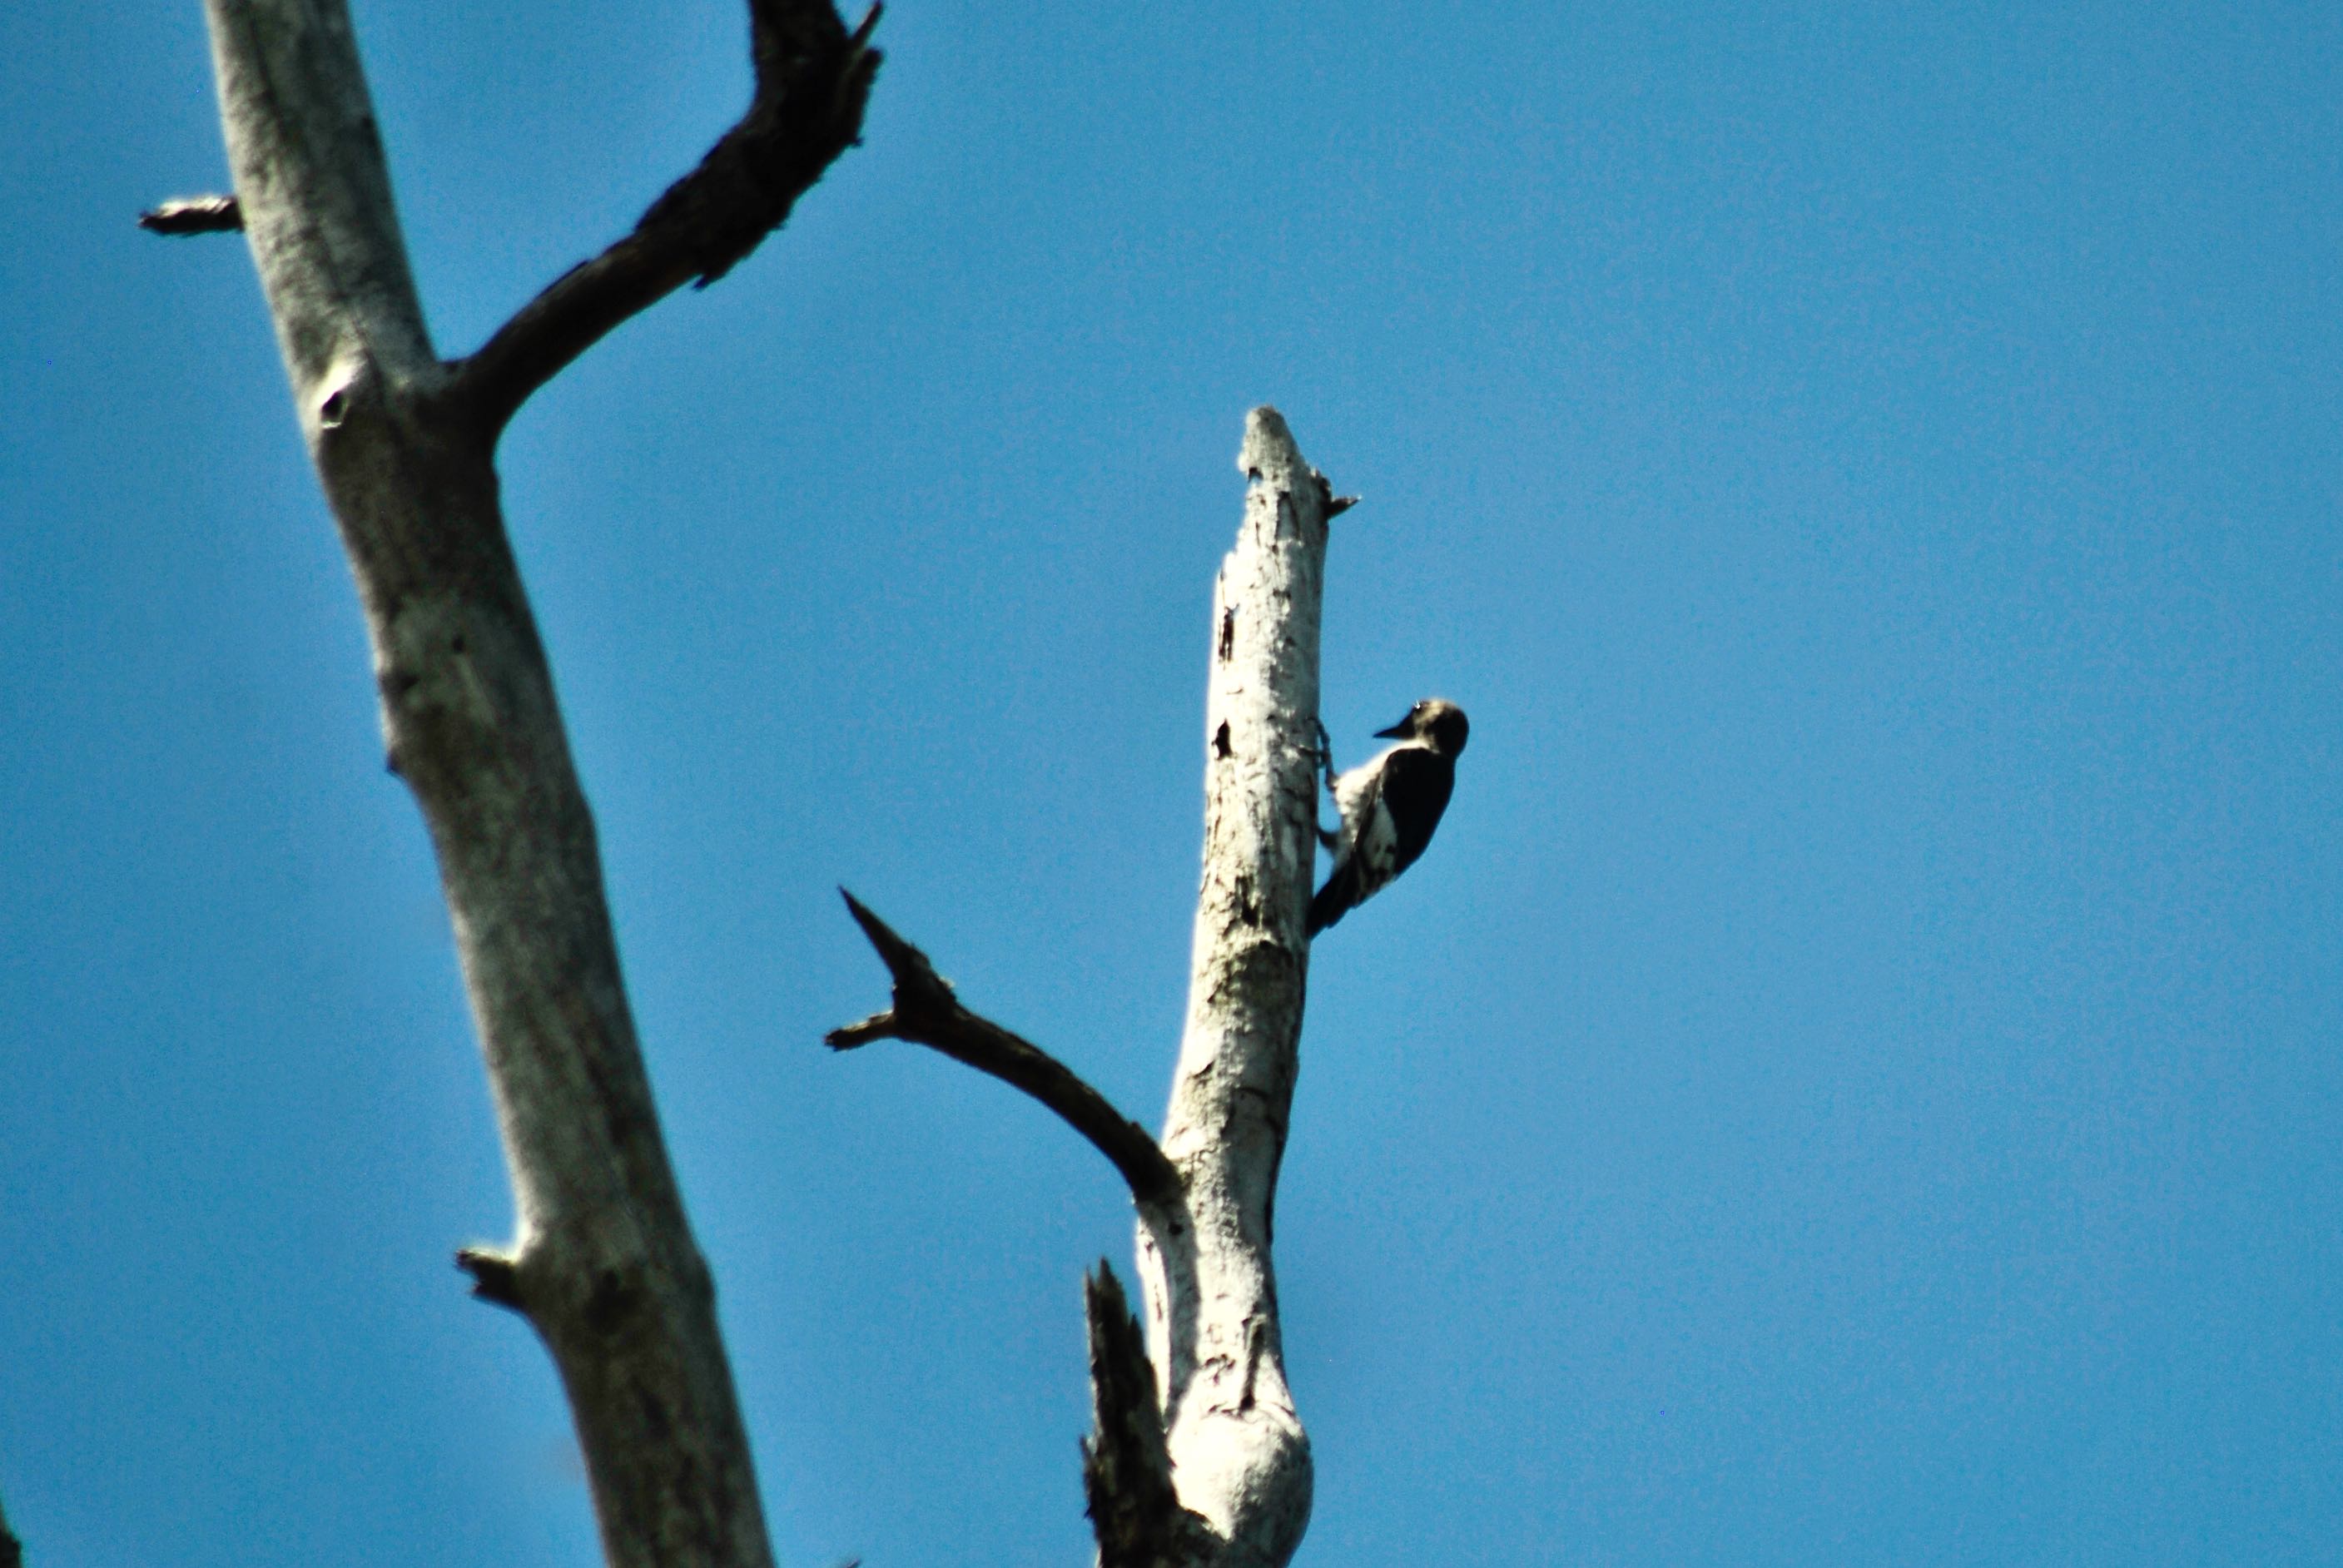 red-headed woodpecker